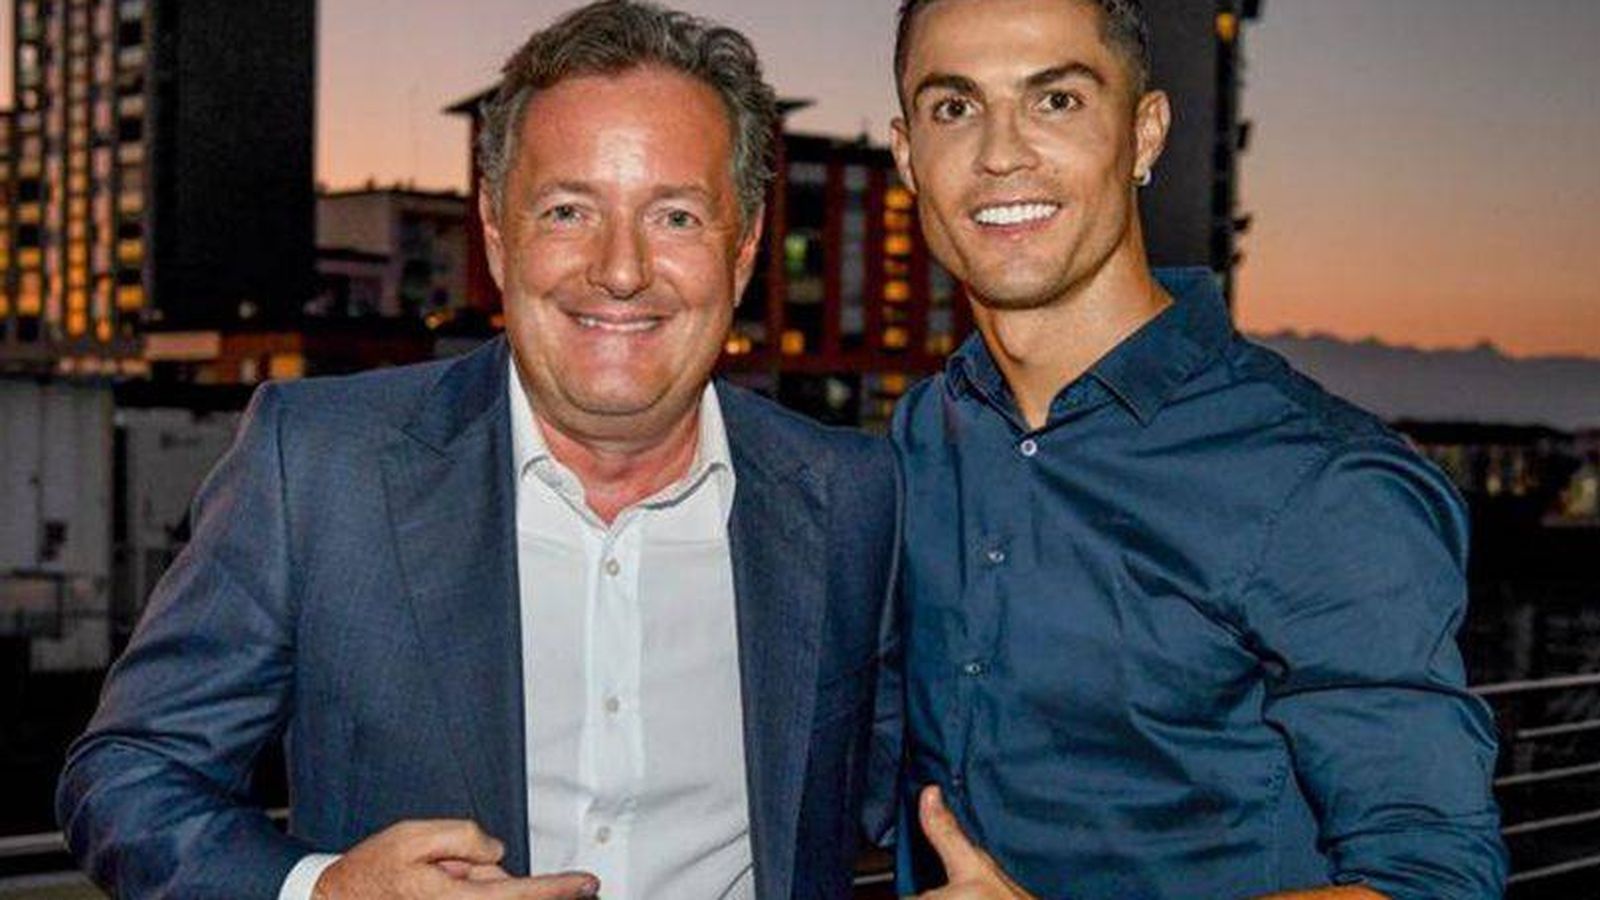 Foto: Piers Morgan y Cristiano Ronaldo. (ITV)